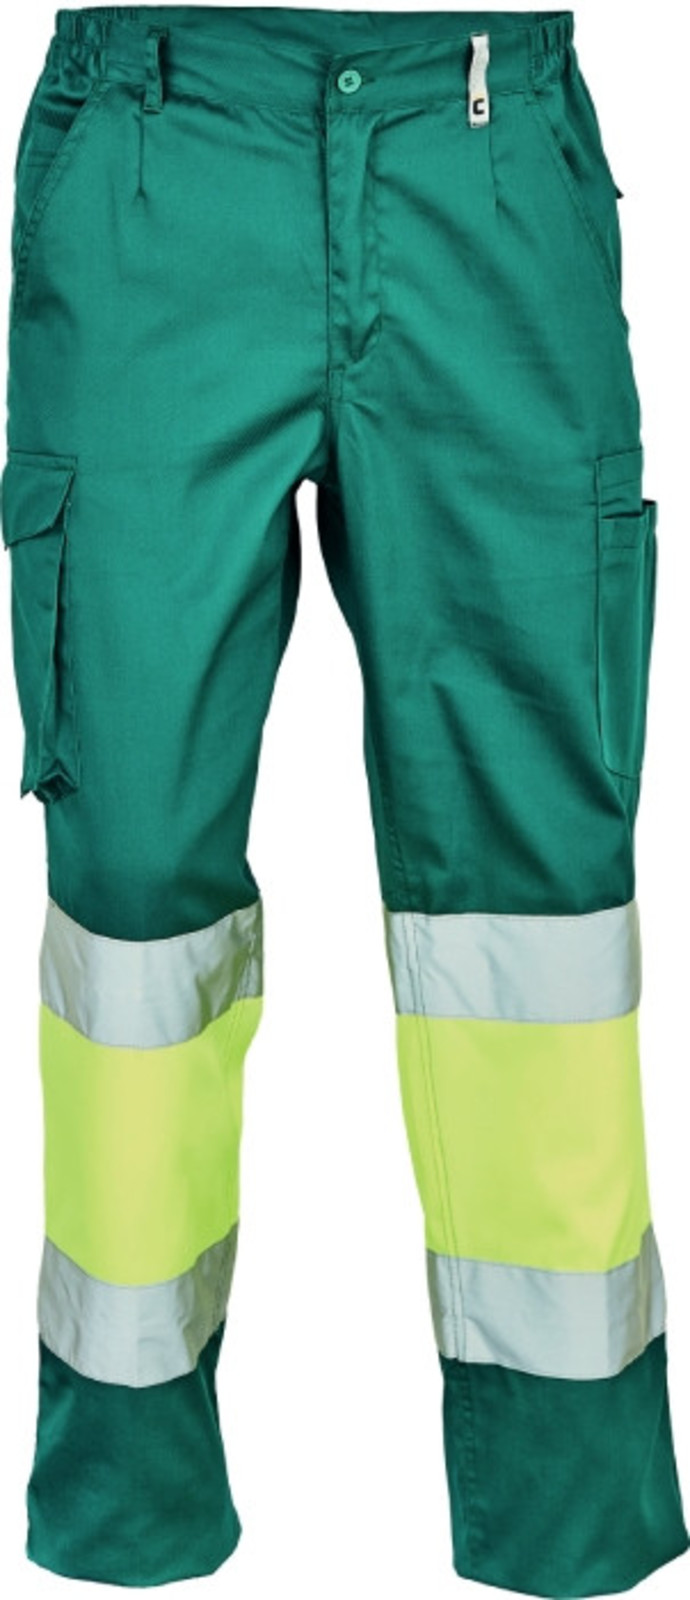 Pracovné reflexné nohavice Cerva Ciudades Bilbao HV - veľkosť: 56, farba: zelená/žltá